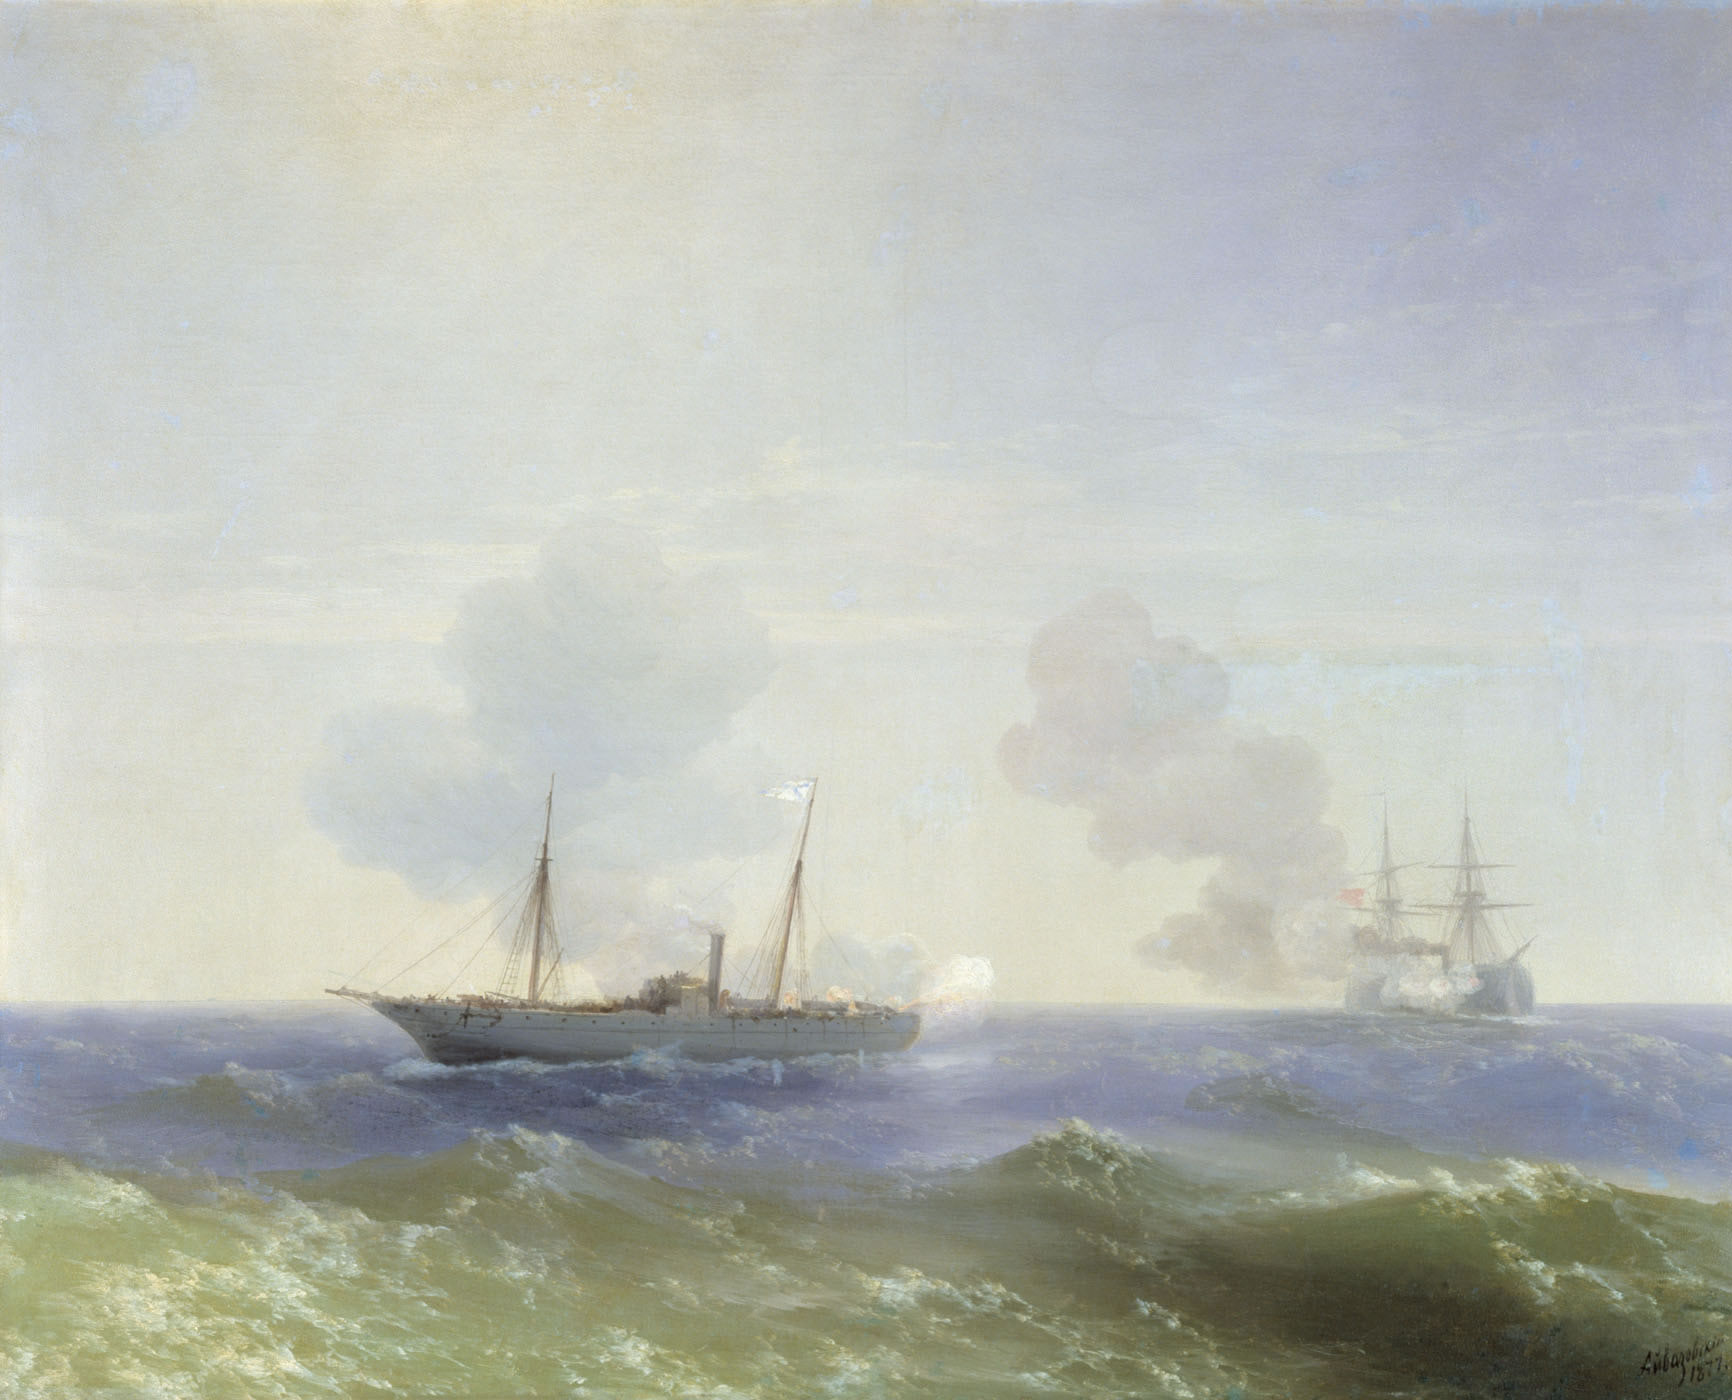 И. Айвазовский. Бой парохода "Веста" с турецким броненосцем "Фехти-Буленд" в Чёрном море 11 июля 1877 года. 1877. 